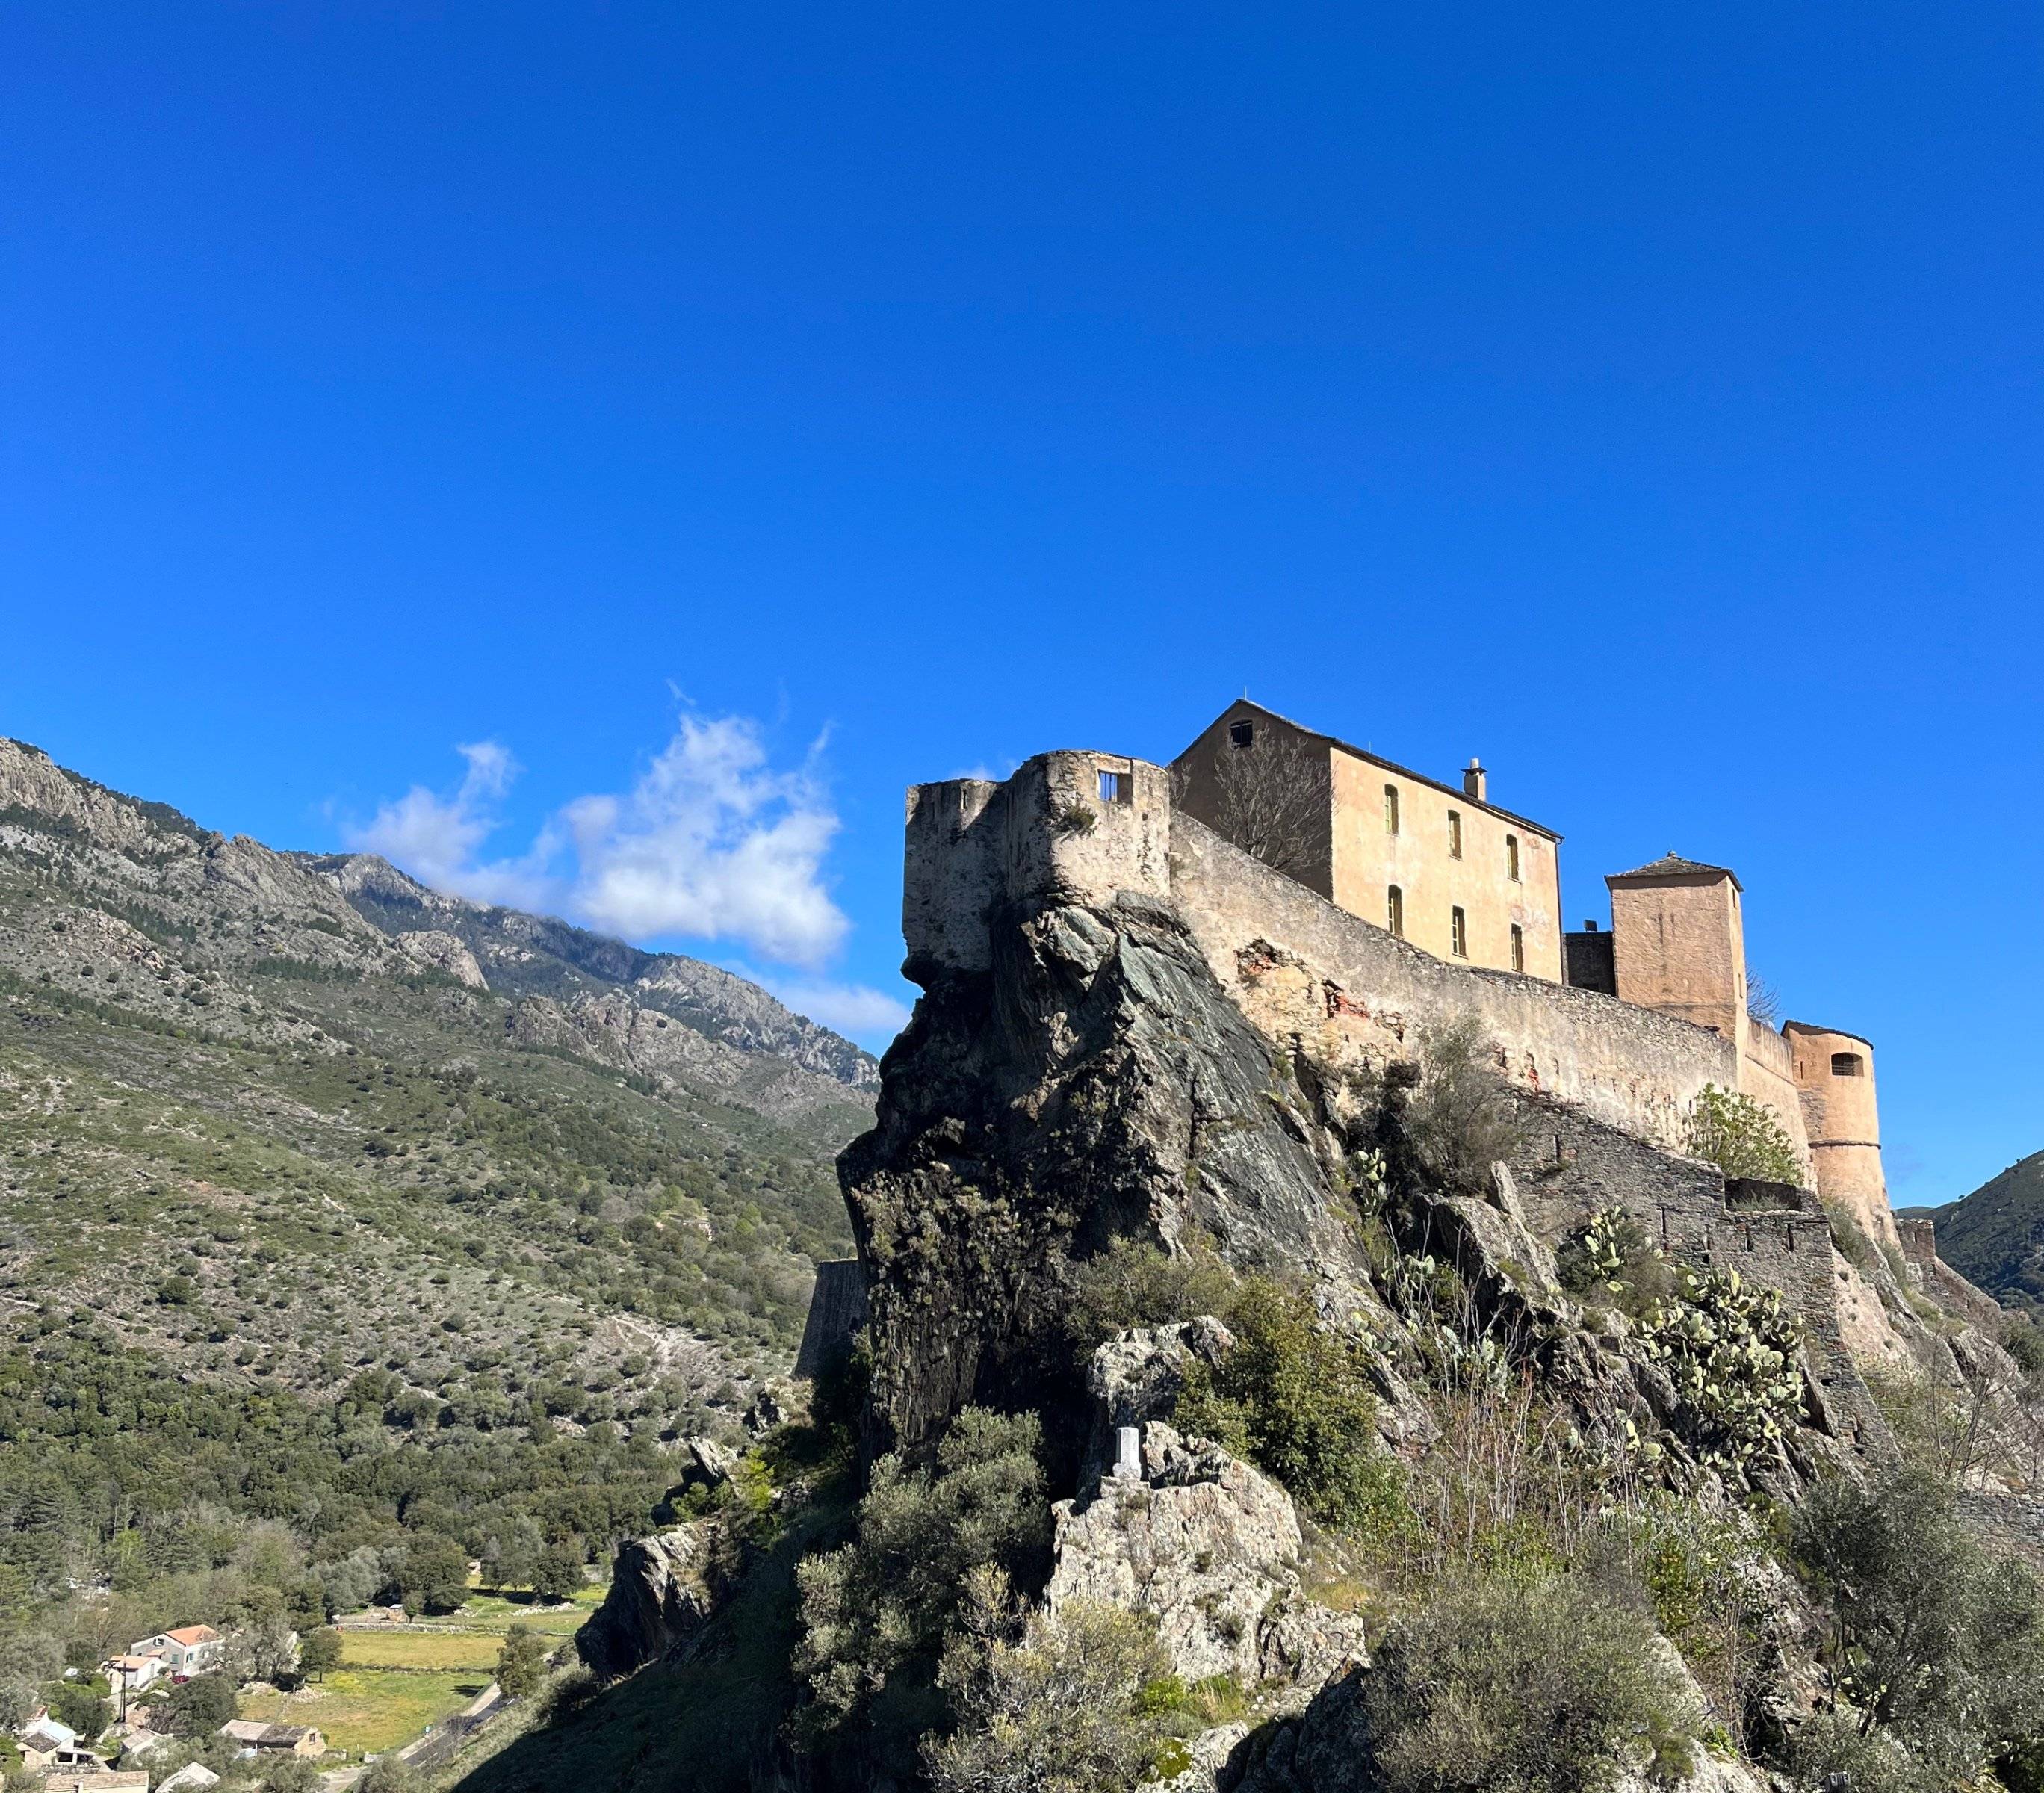 Traversée du Sud au centre : découverte de Corte, capitale historique de la Corse